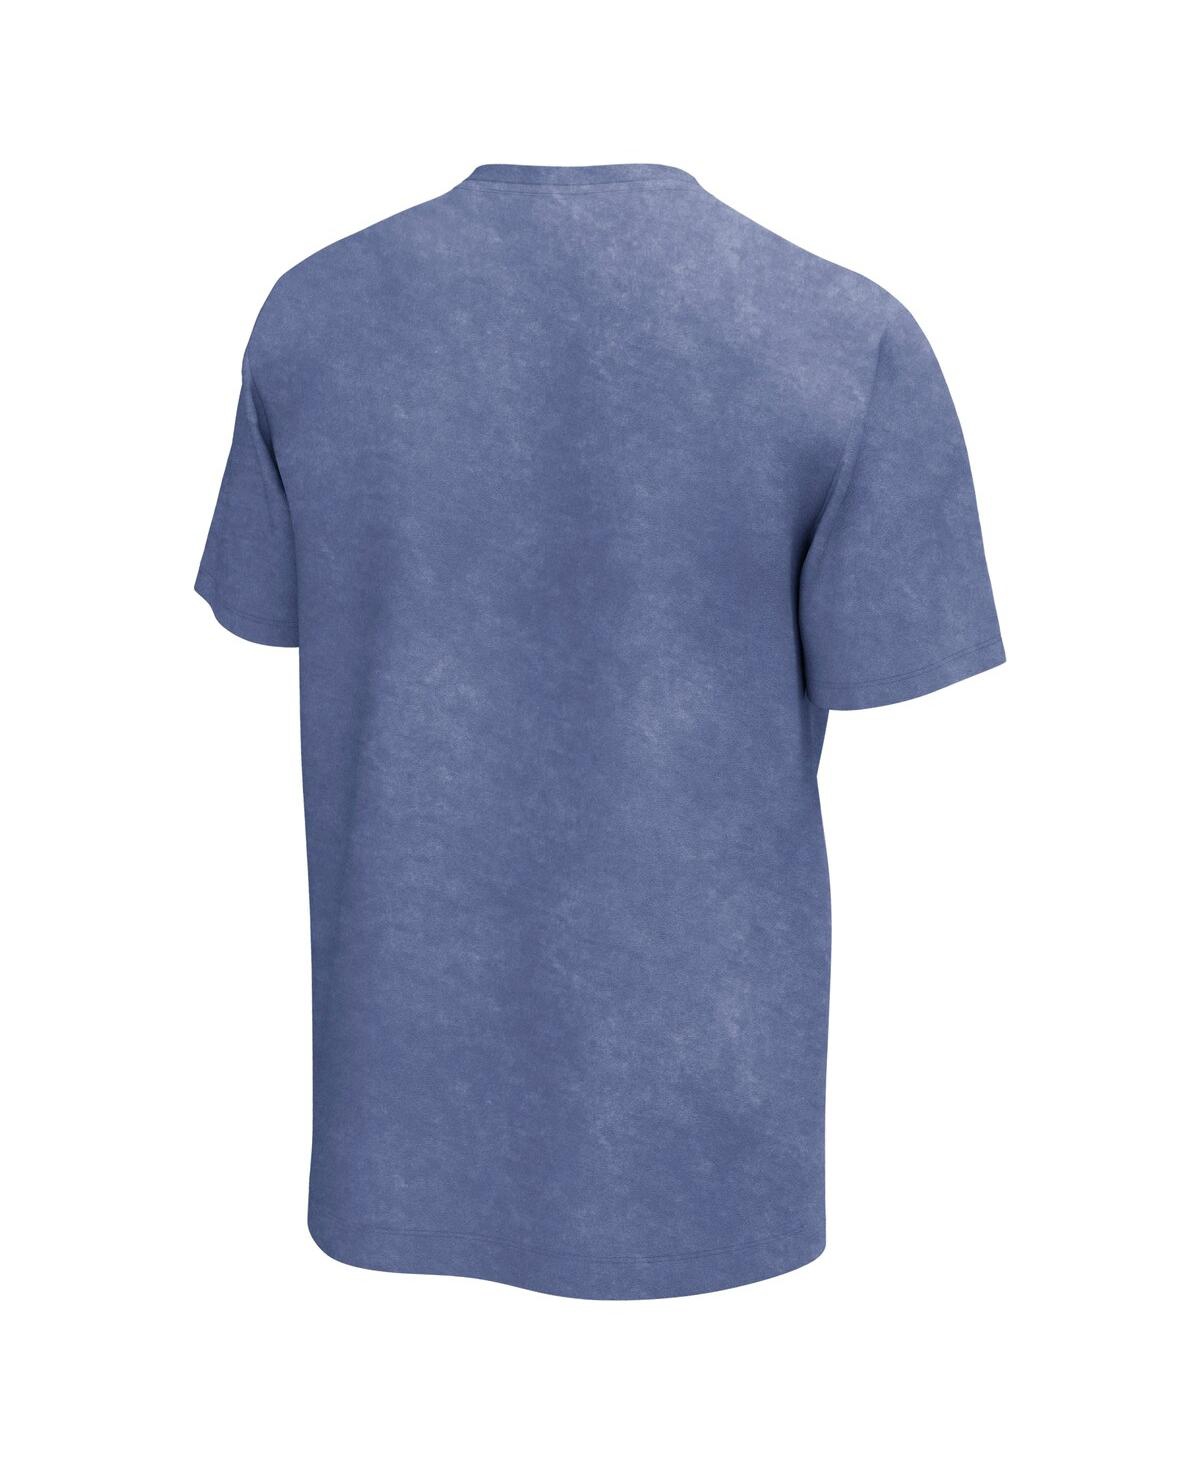 Shop Philcos Men's Blue Janis Joplin Squares Washed Graphic T-shirt